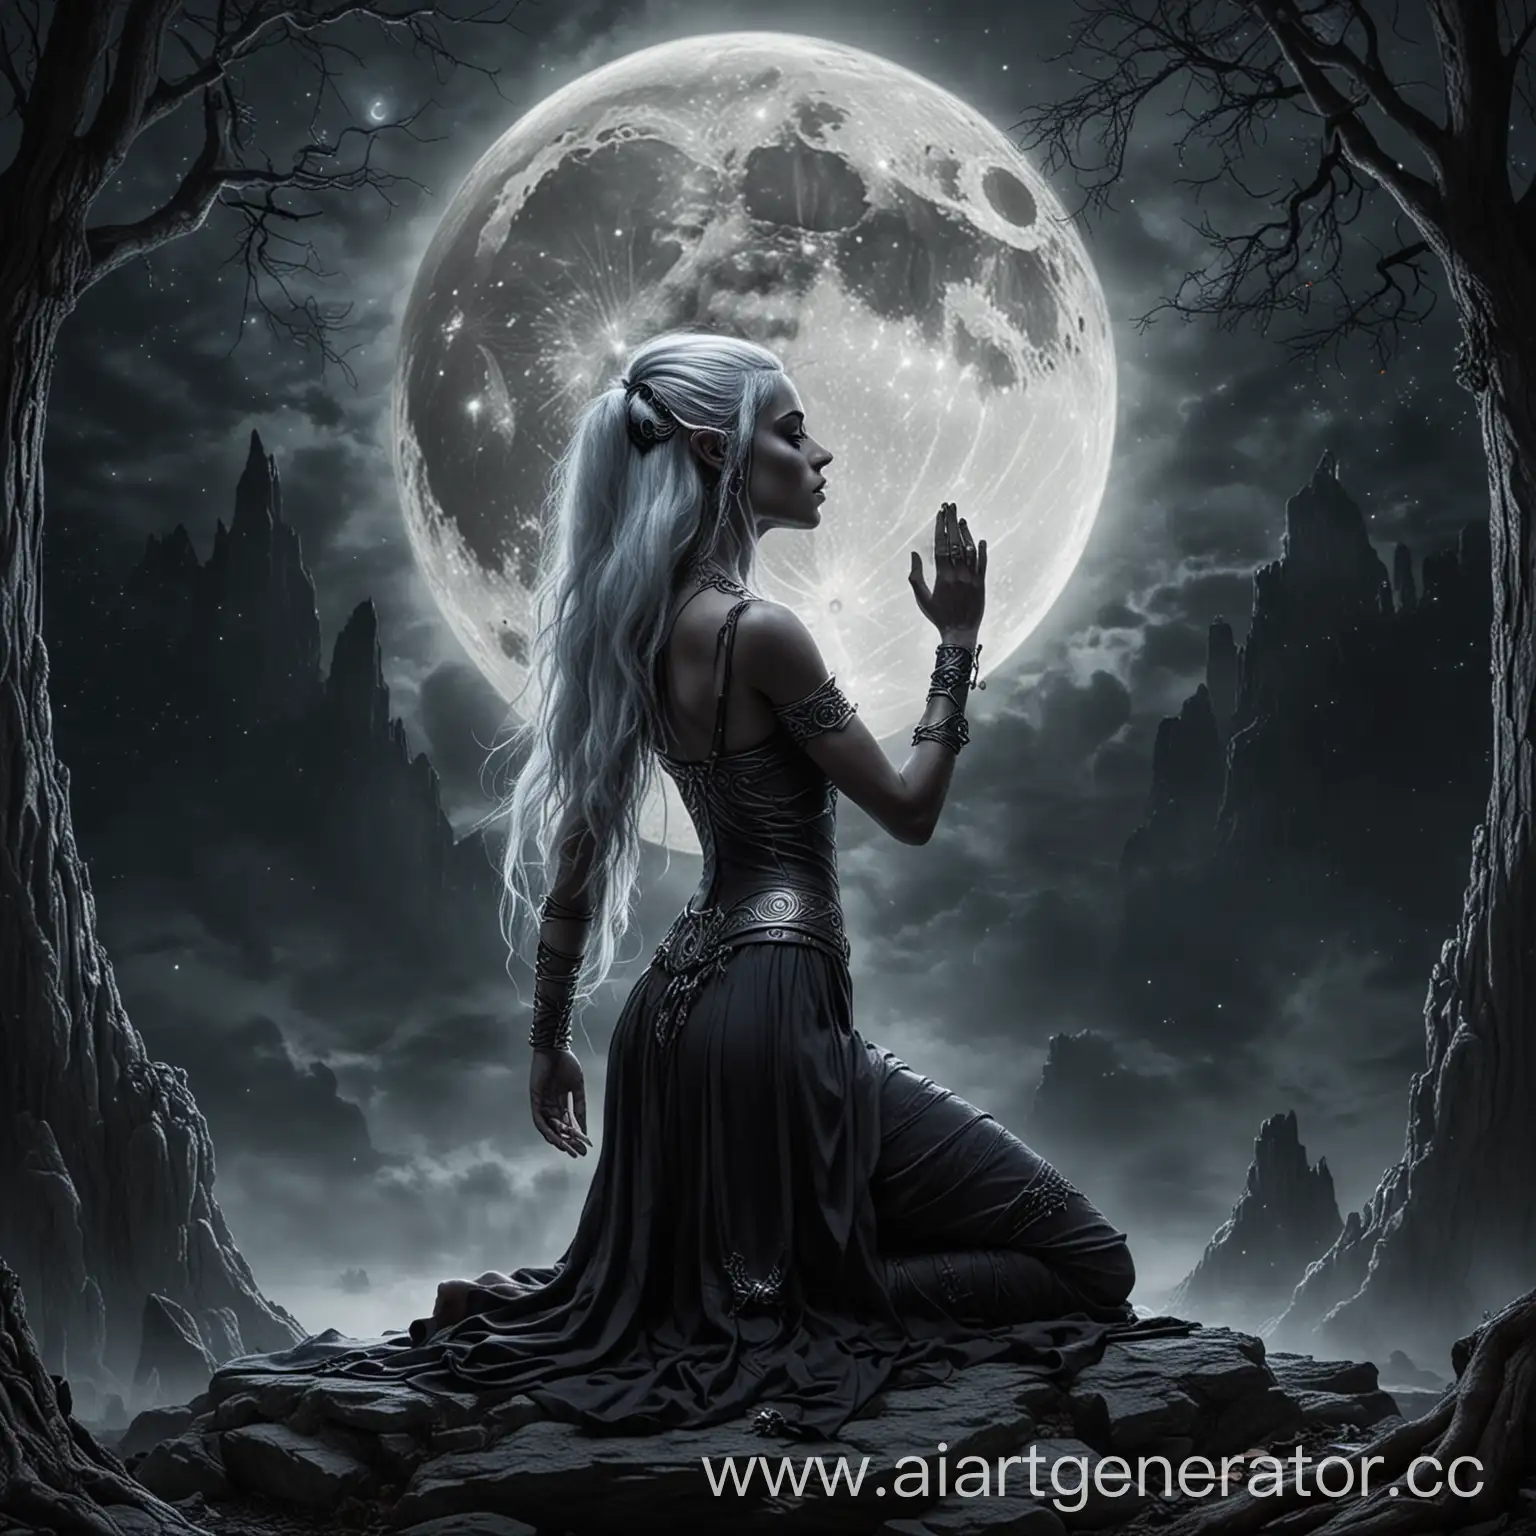 темная эльфийка молится богине луны